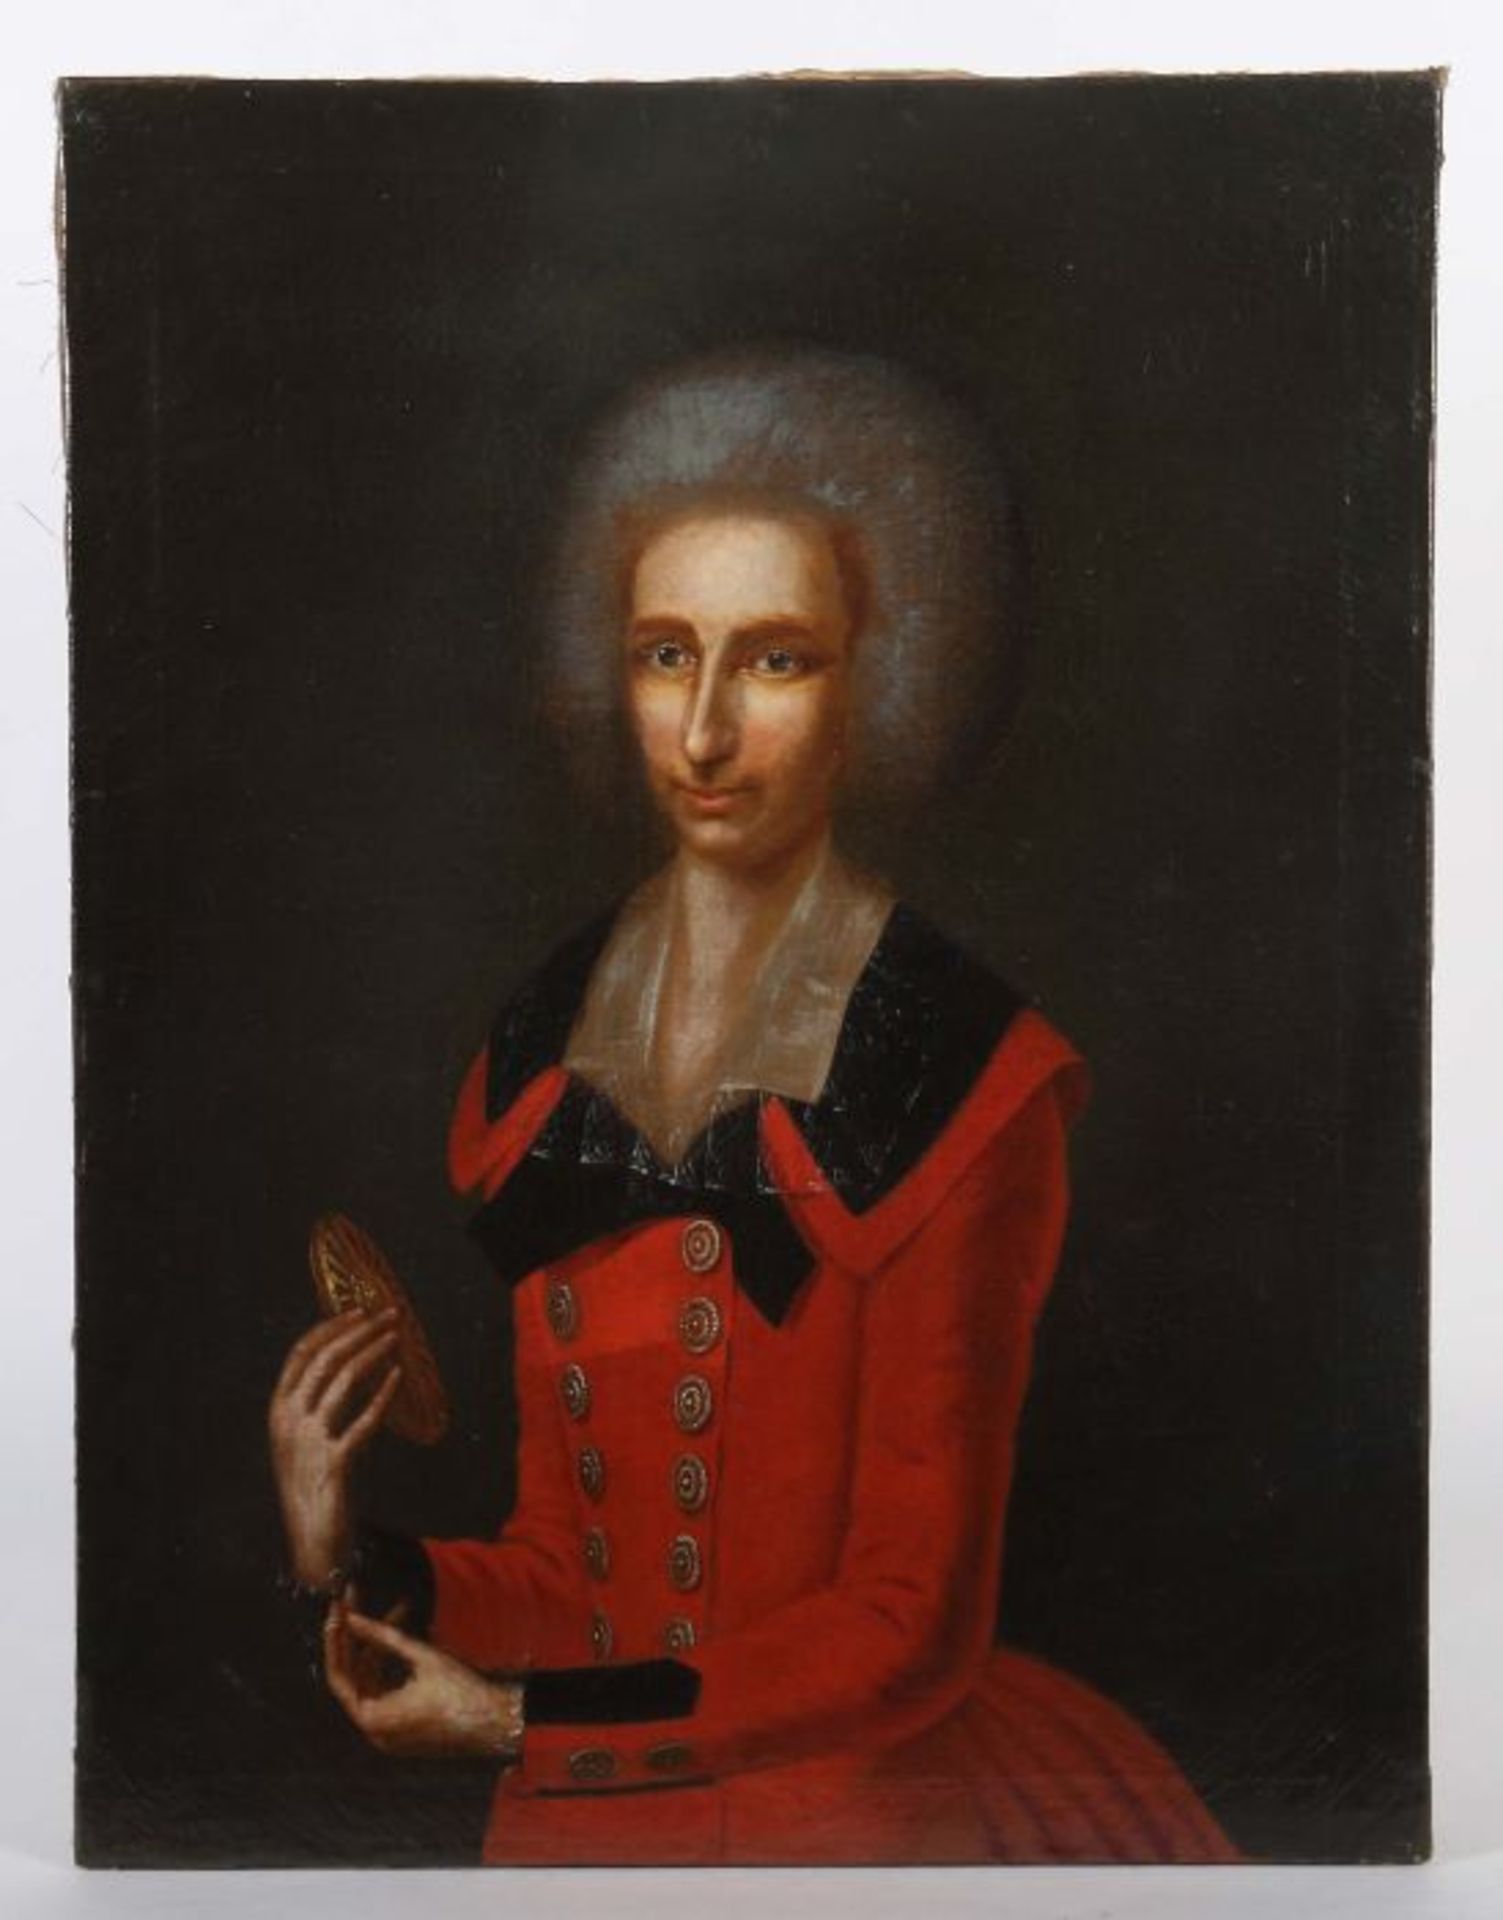 della Croce, Johann NepomukLaifs 1736 - 1819 Linz, österreichischer Maler. "Damenportrait", - Bild 2 aus 4